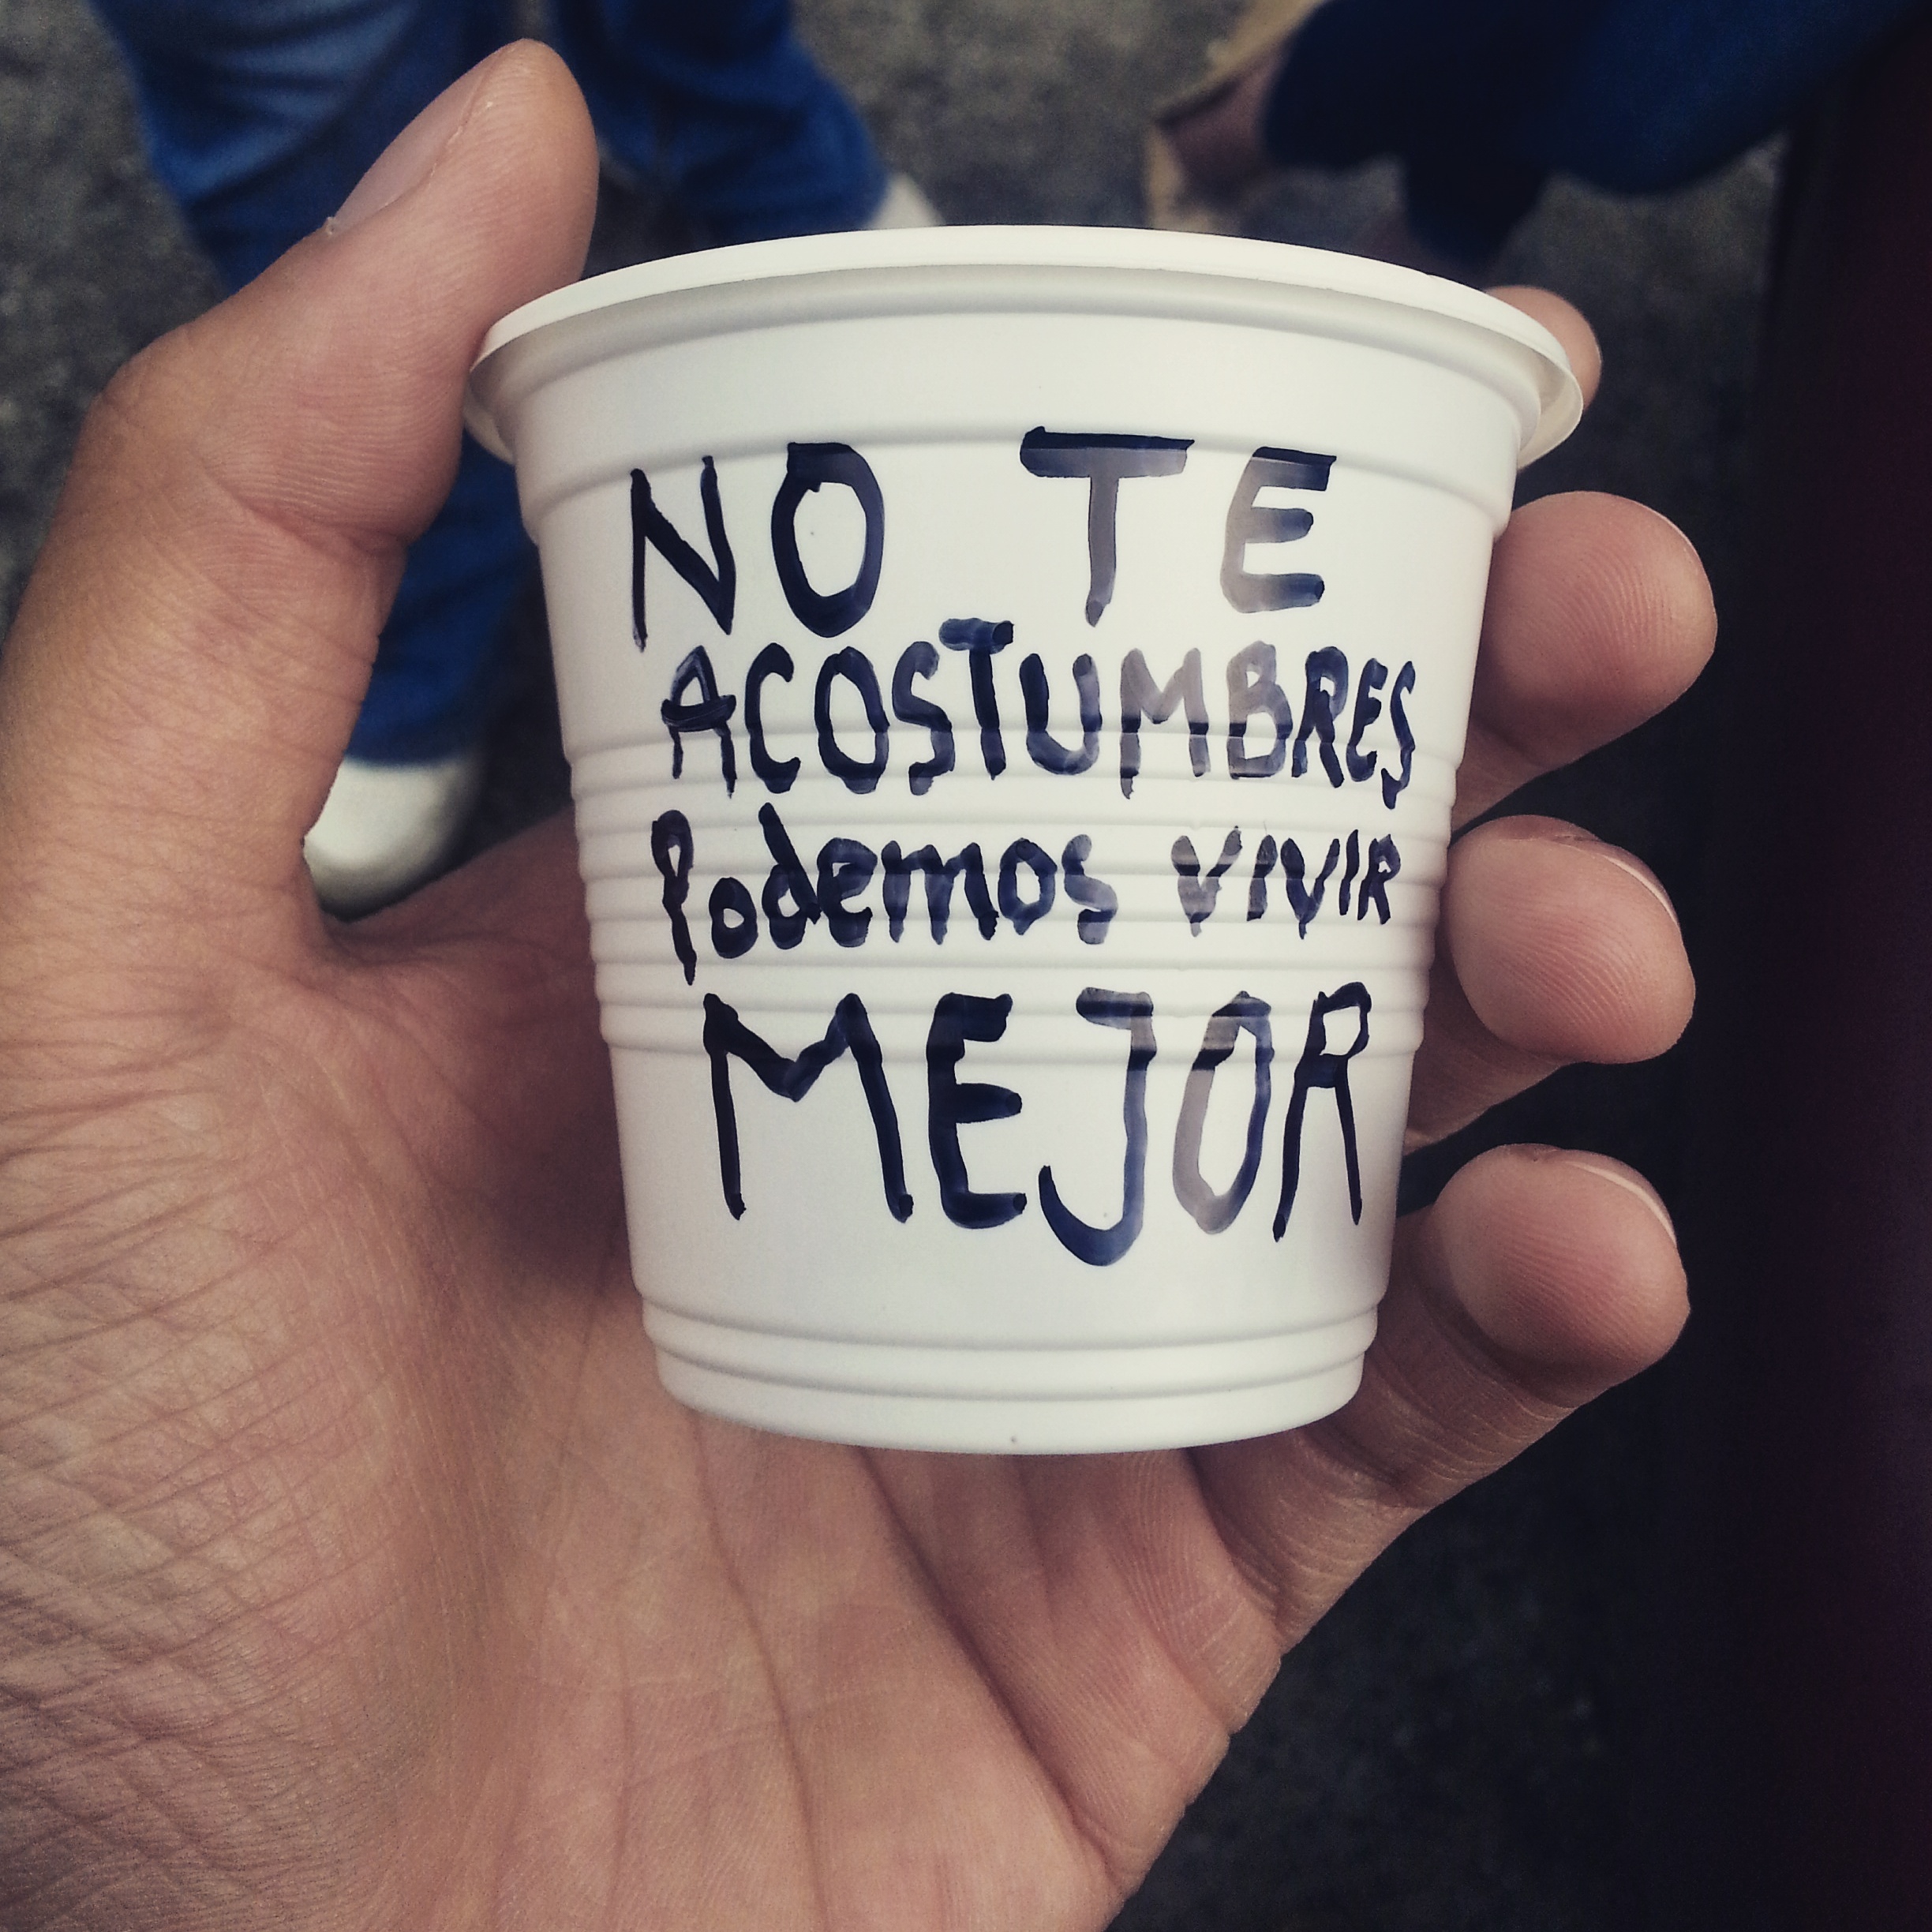 Un mensaje para los venezolanos en las colas: “No te acostumbres, podemos vivir mejor” (Fotos)